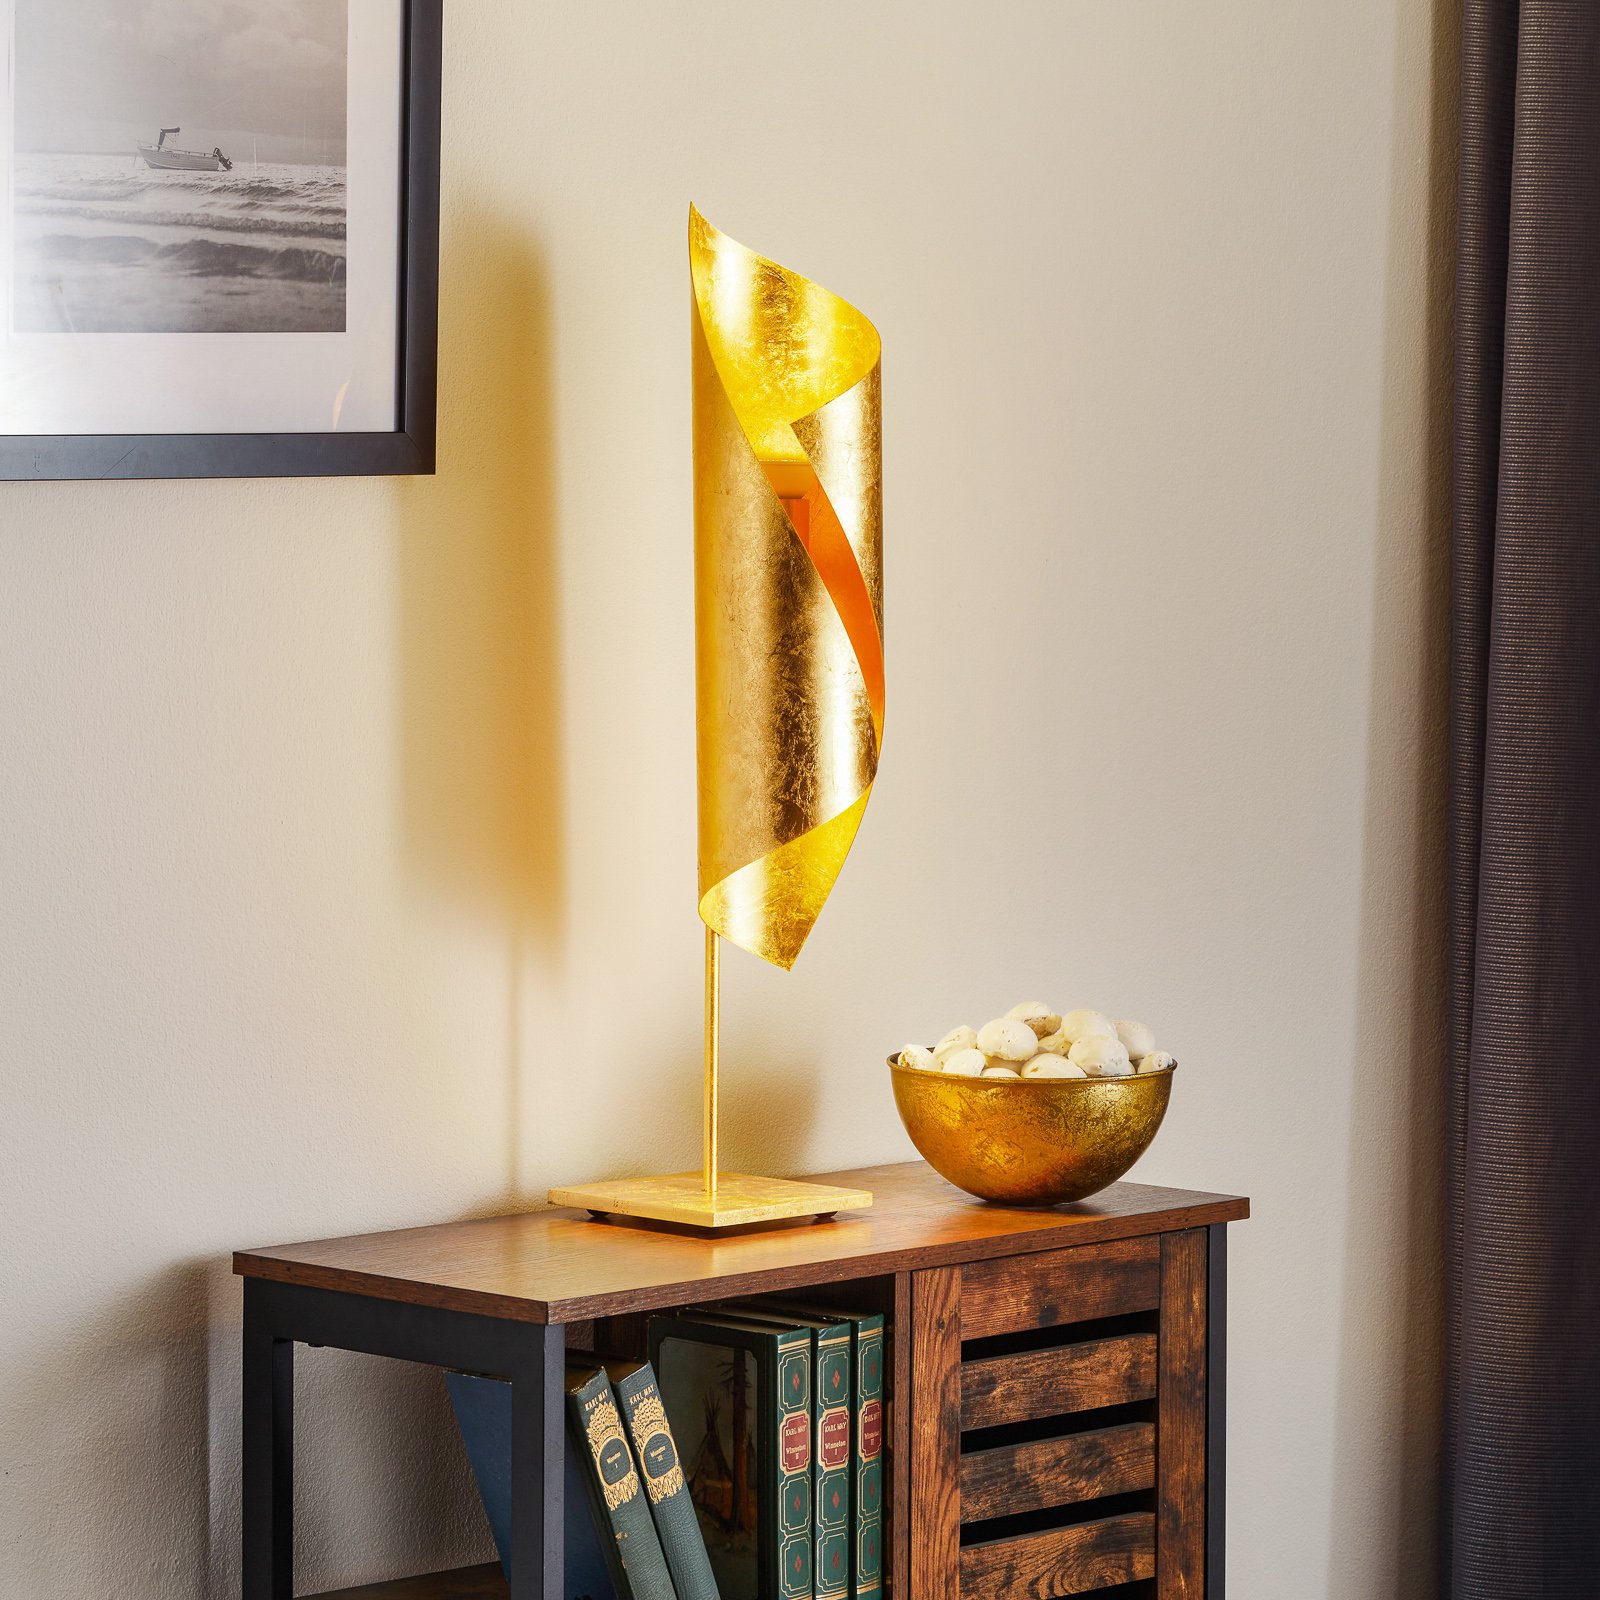 Knikerboker Hué Blattgold-Tischleuchte, 70 cm hoch